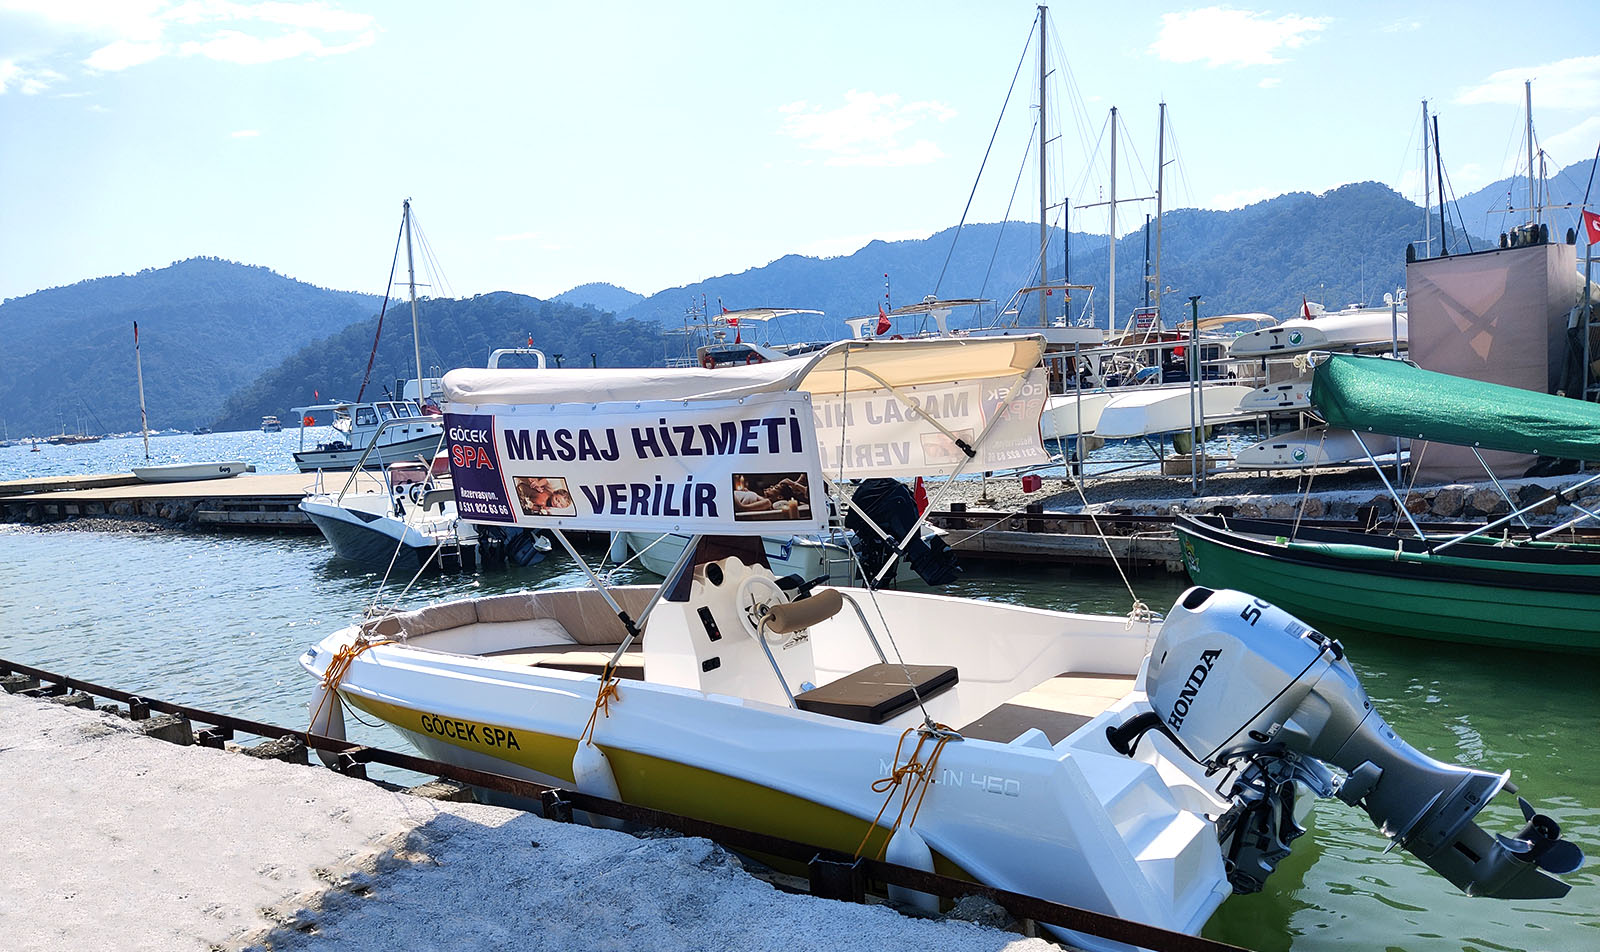 Göcek Fethiye massage and spa service on yachts